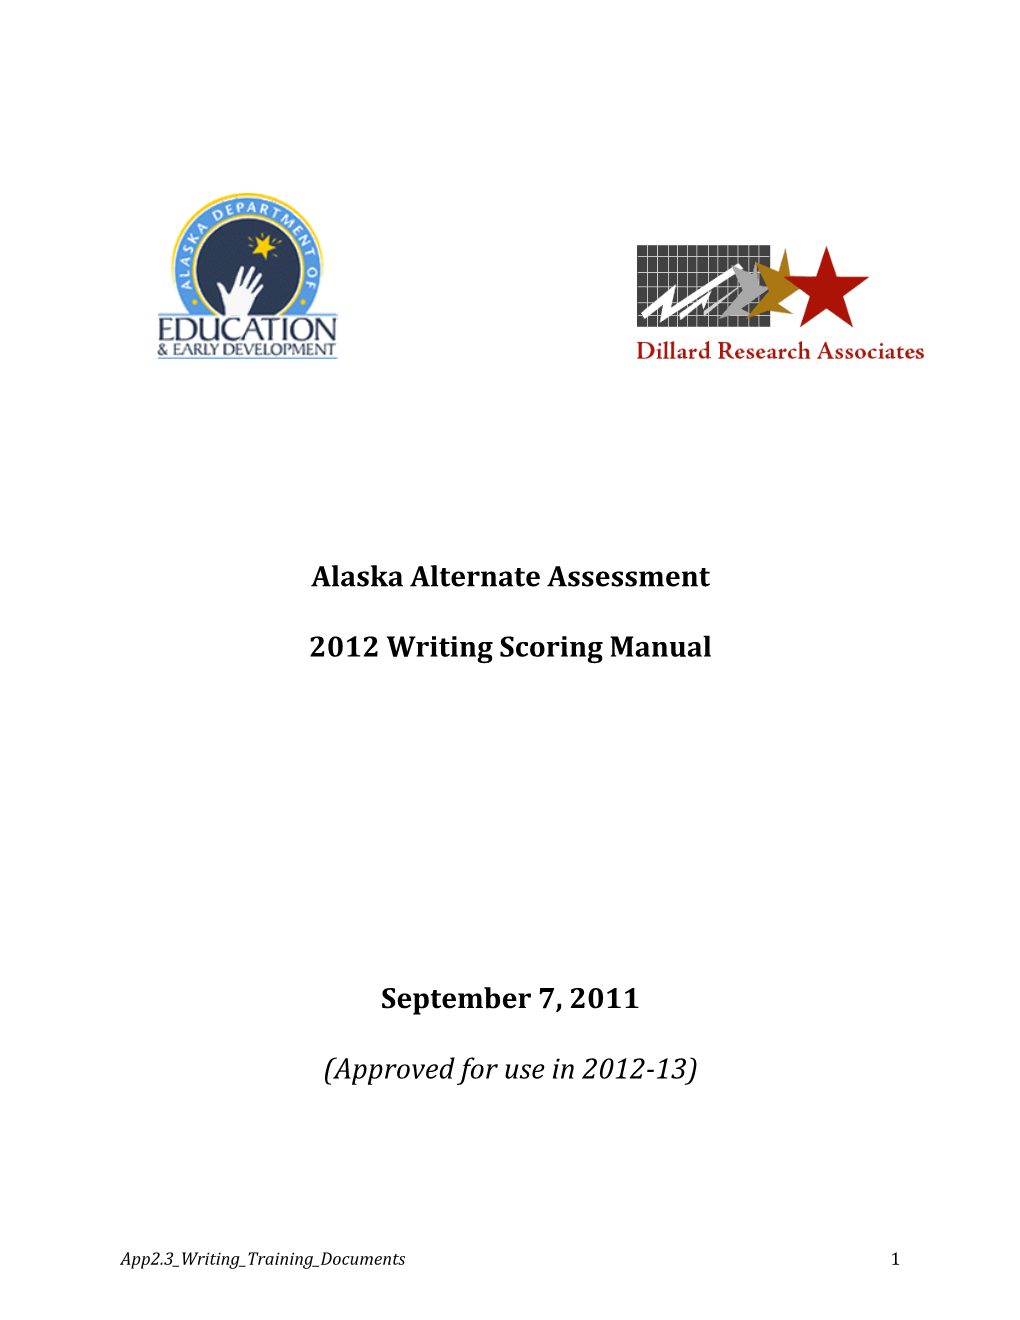 Alaska Alternate Assessment 2012